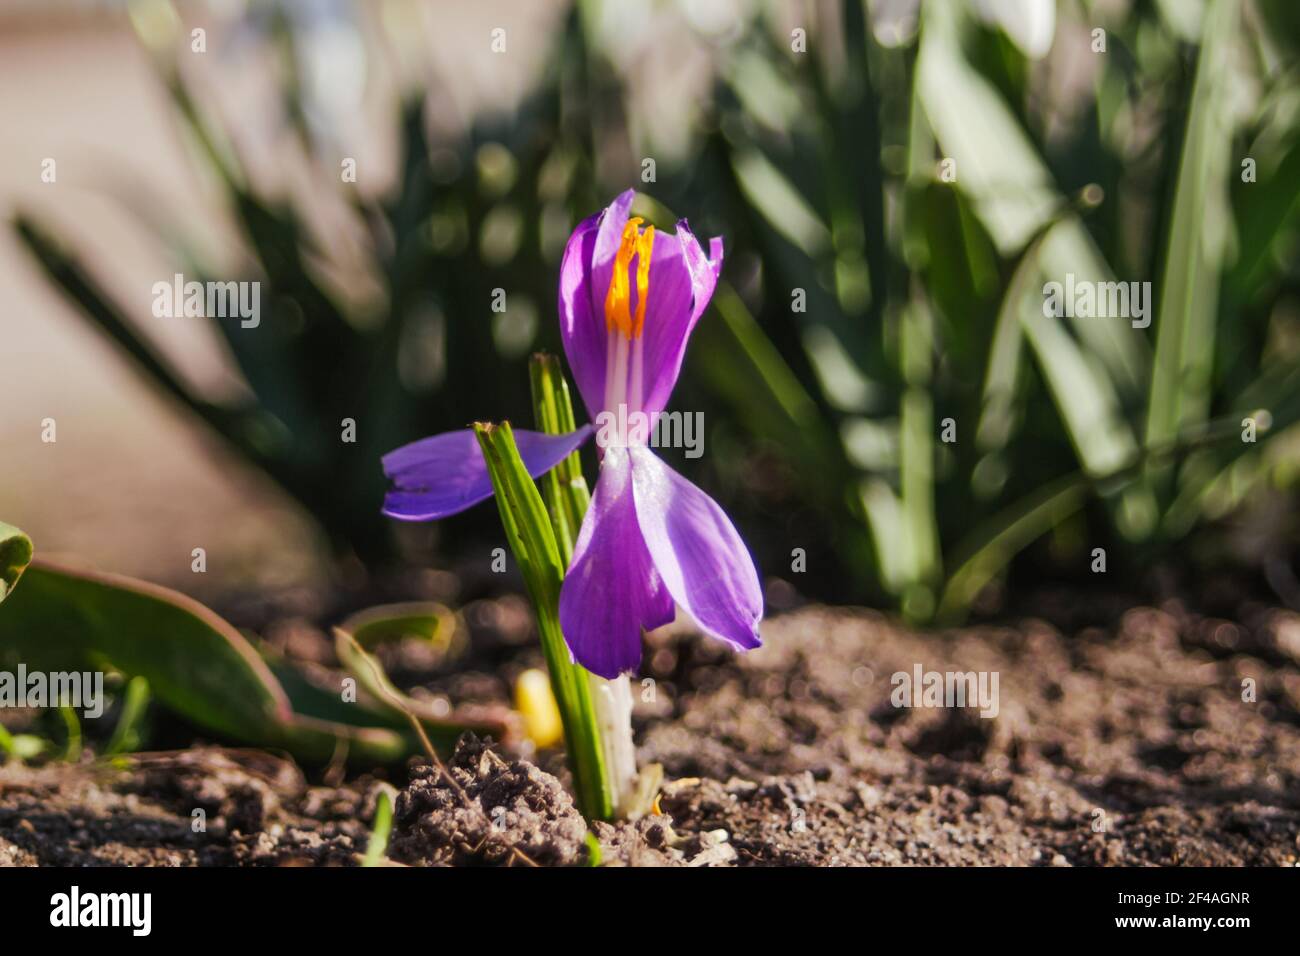 Effet de flou une fleur de safran pousse dans le jardin par temps ensoleillé. Arrière-plan vert flou. Hors foyer Banque D'Images